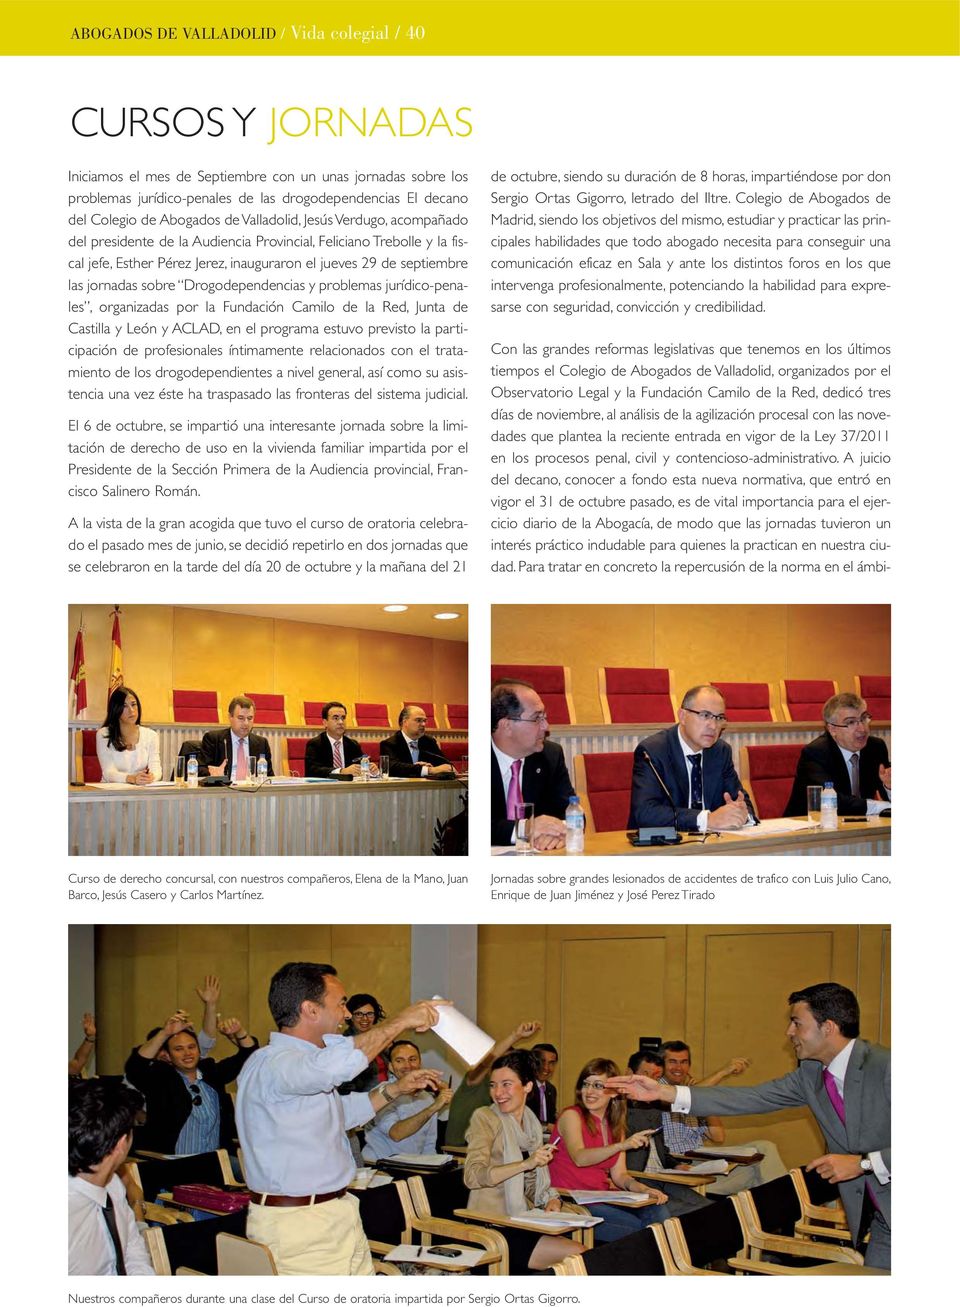 jornadas sobre Drogodependencias y problemas jurídico-penales, organizadas por la Fundación Camilo de la Red, Junta de Castilla y León y ACLAD, en el programa estuvo previsto la participación de